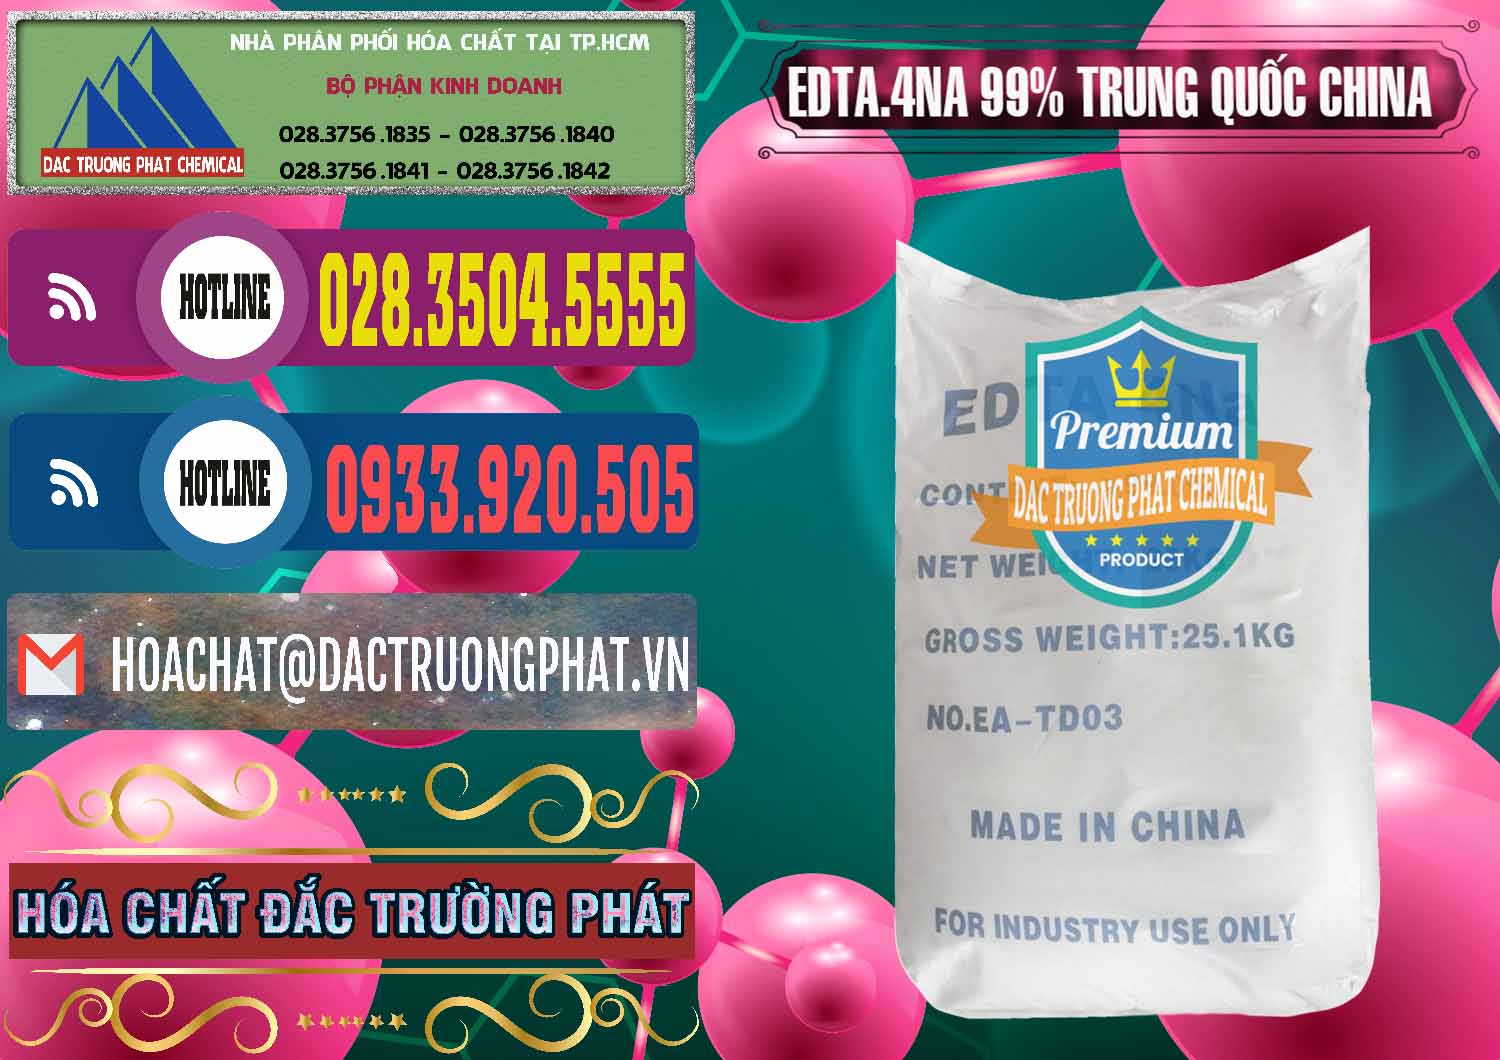 Đơn vị chuyên cung cấp và bán EDTA.4NA - EDTA Muối 99% Trung Quốc China - 0292 - Đơn vị chuyên cung ứng & phân phối hóa chất tại TP.HCM - muabanhoachat.com.vn